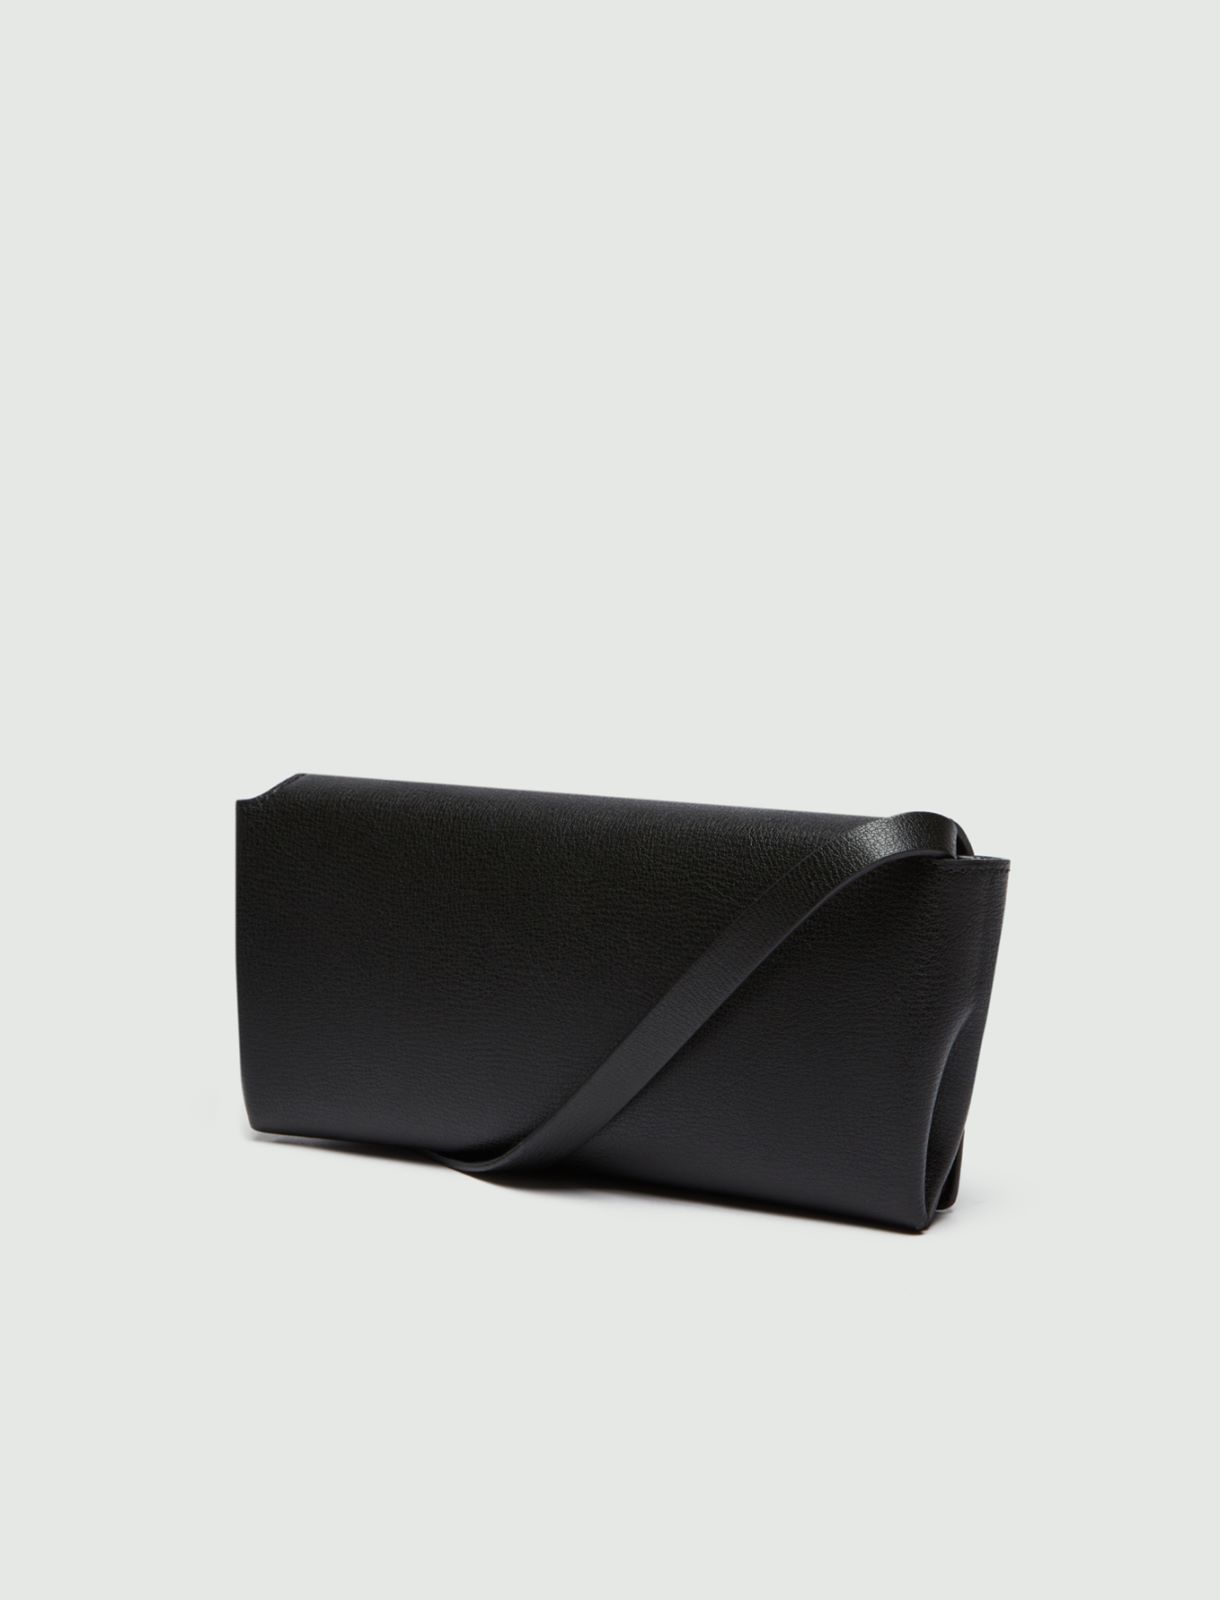 Portemonnaie-Tasche aus Leder  - Anthrazit - Marella - 2